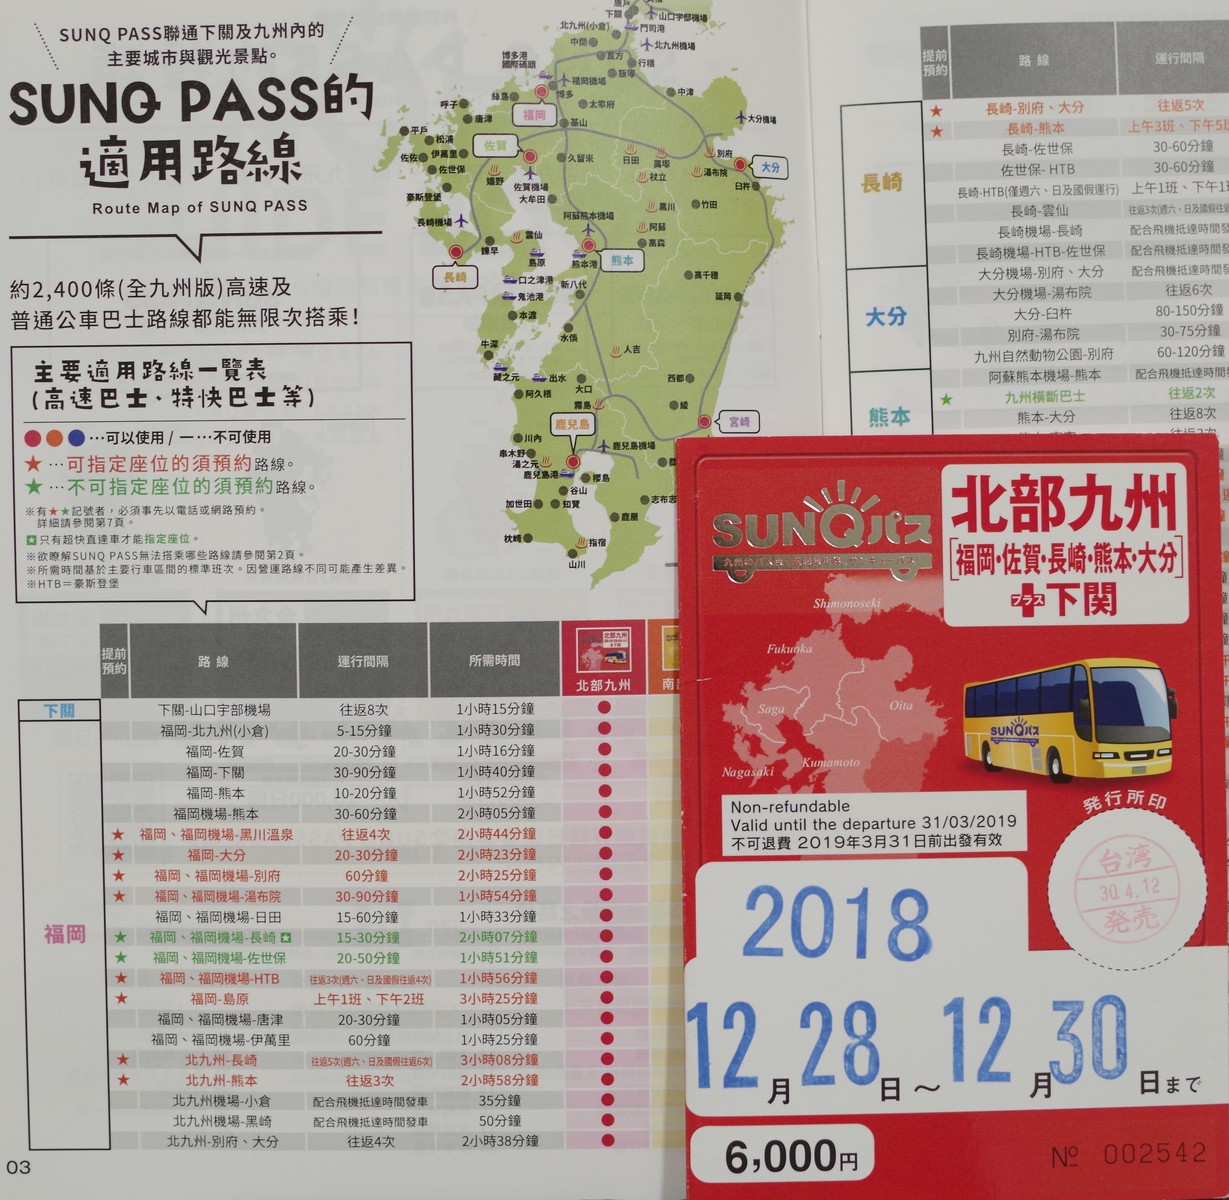 旅行社寄出的 SUNQ PASS 票券已經印好使用日期